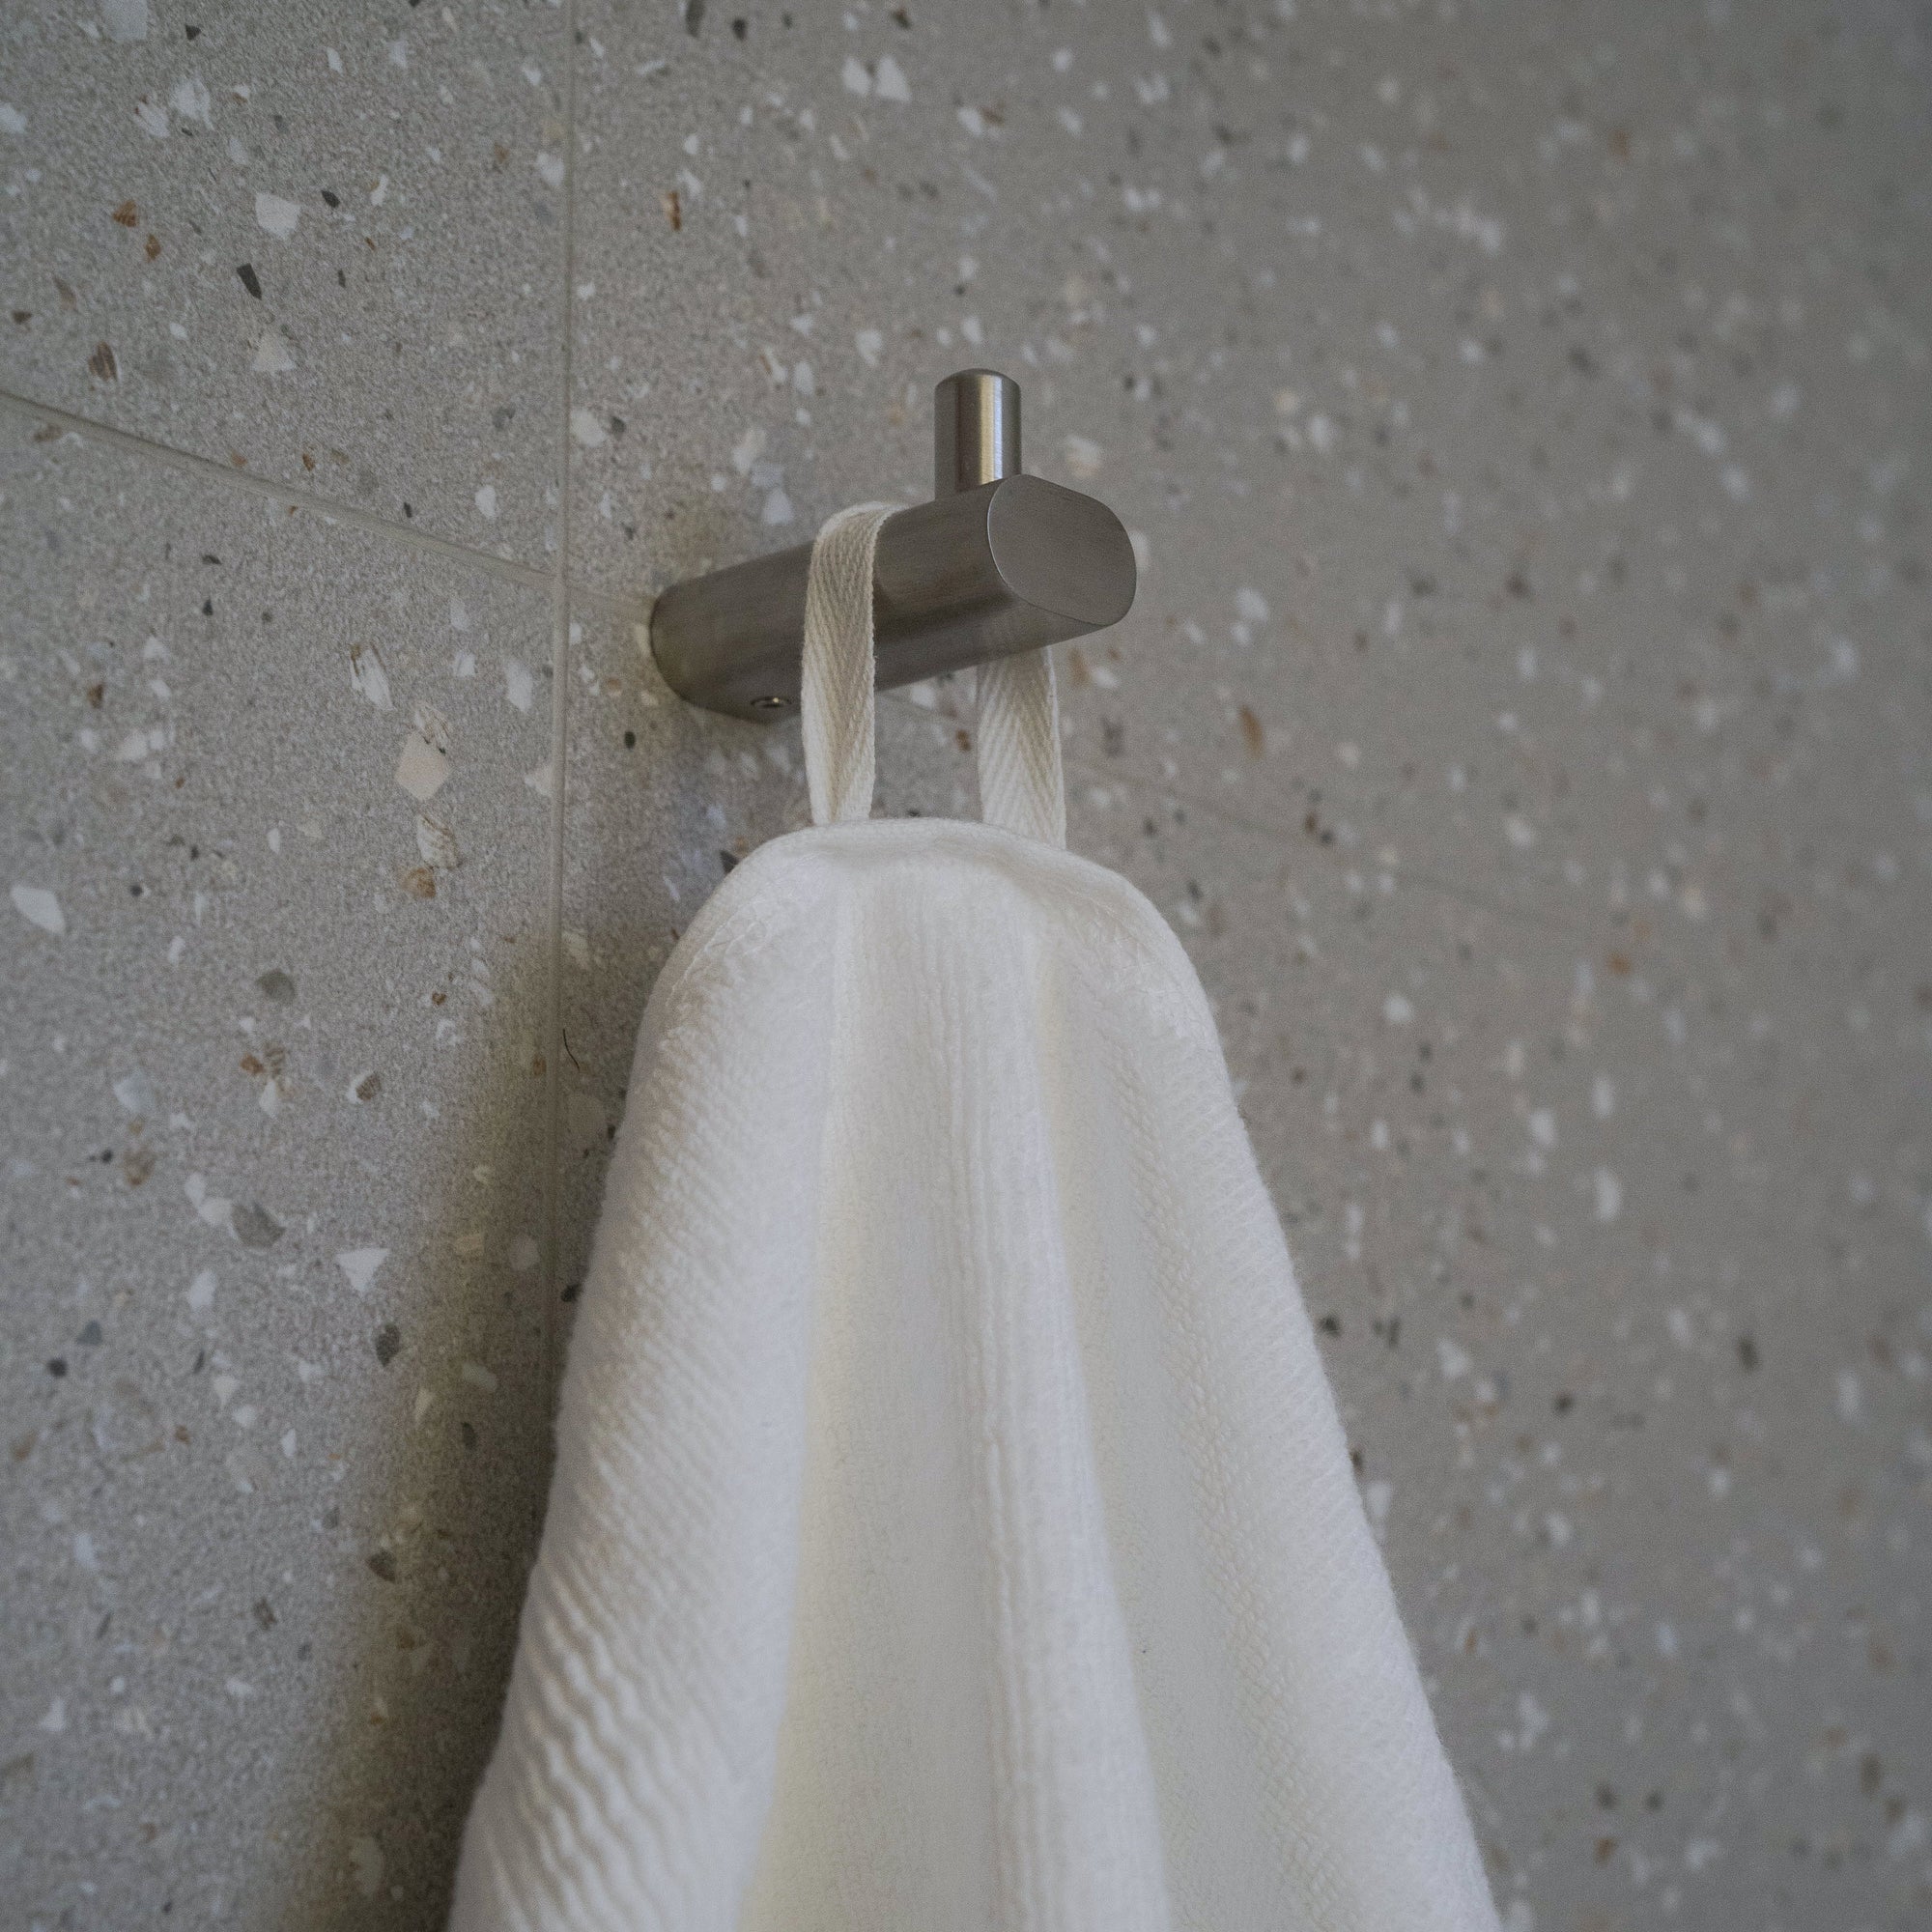 Silver Infused Towel Bundle